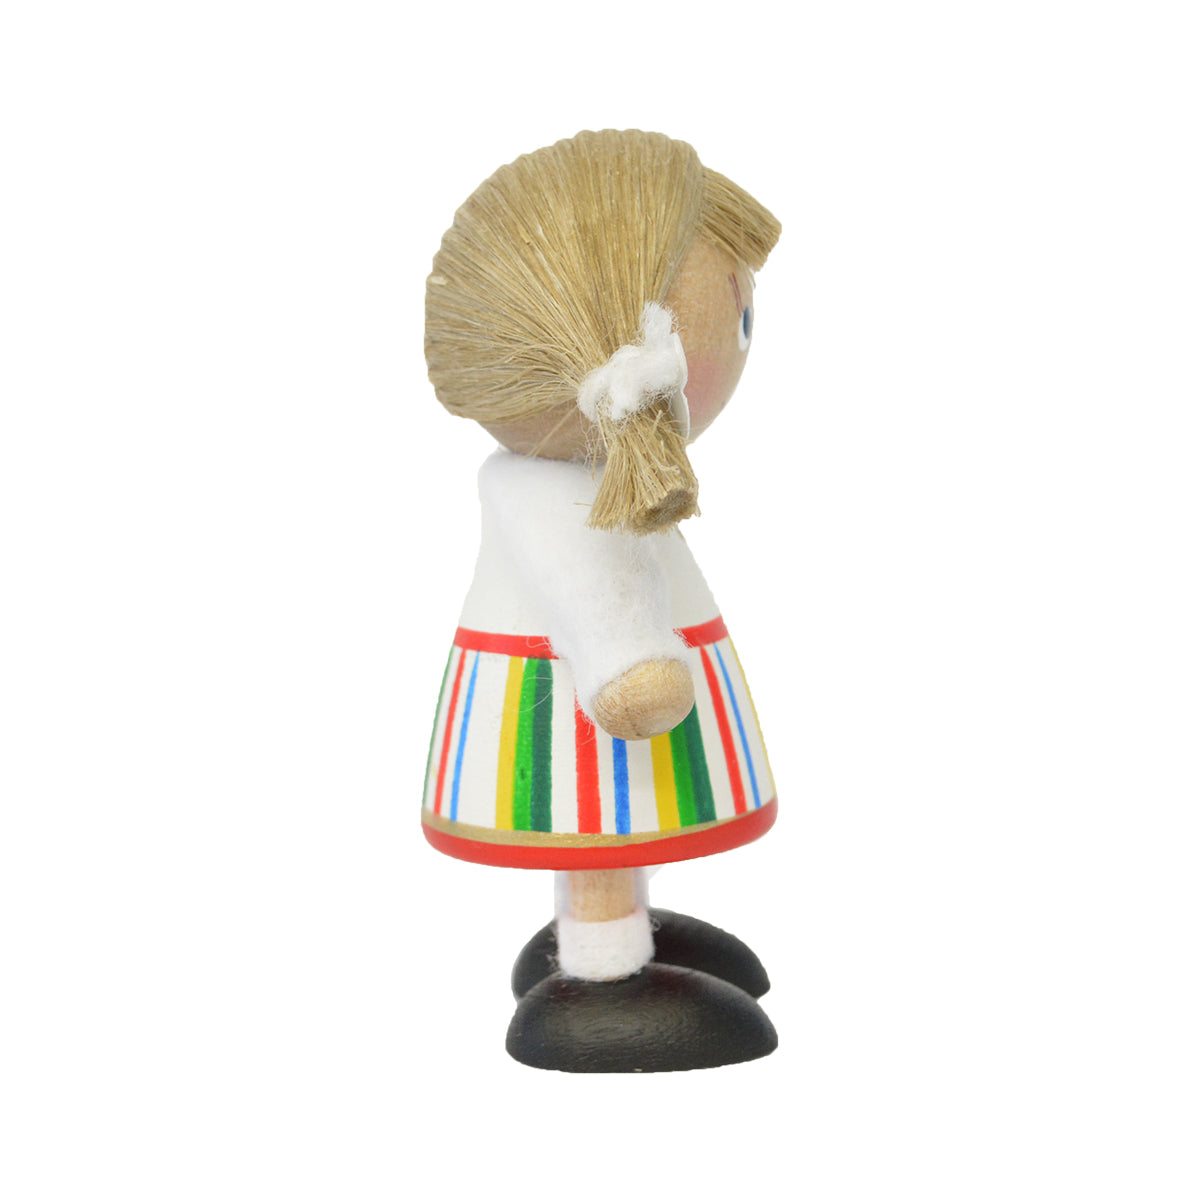 NORDIC GIFT ノルディック・ギフト 木製人形 民族衣装の女の子( ホワイト×ホワイト / レッド / グリーン )